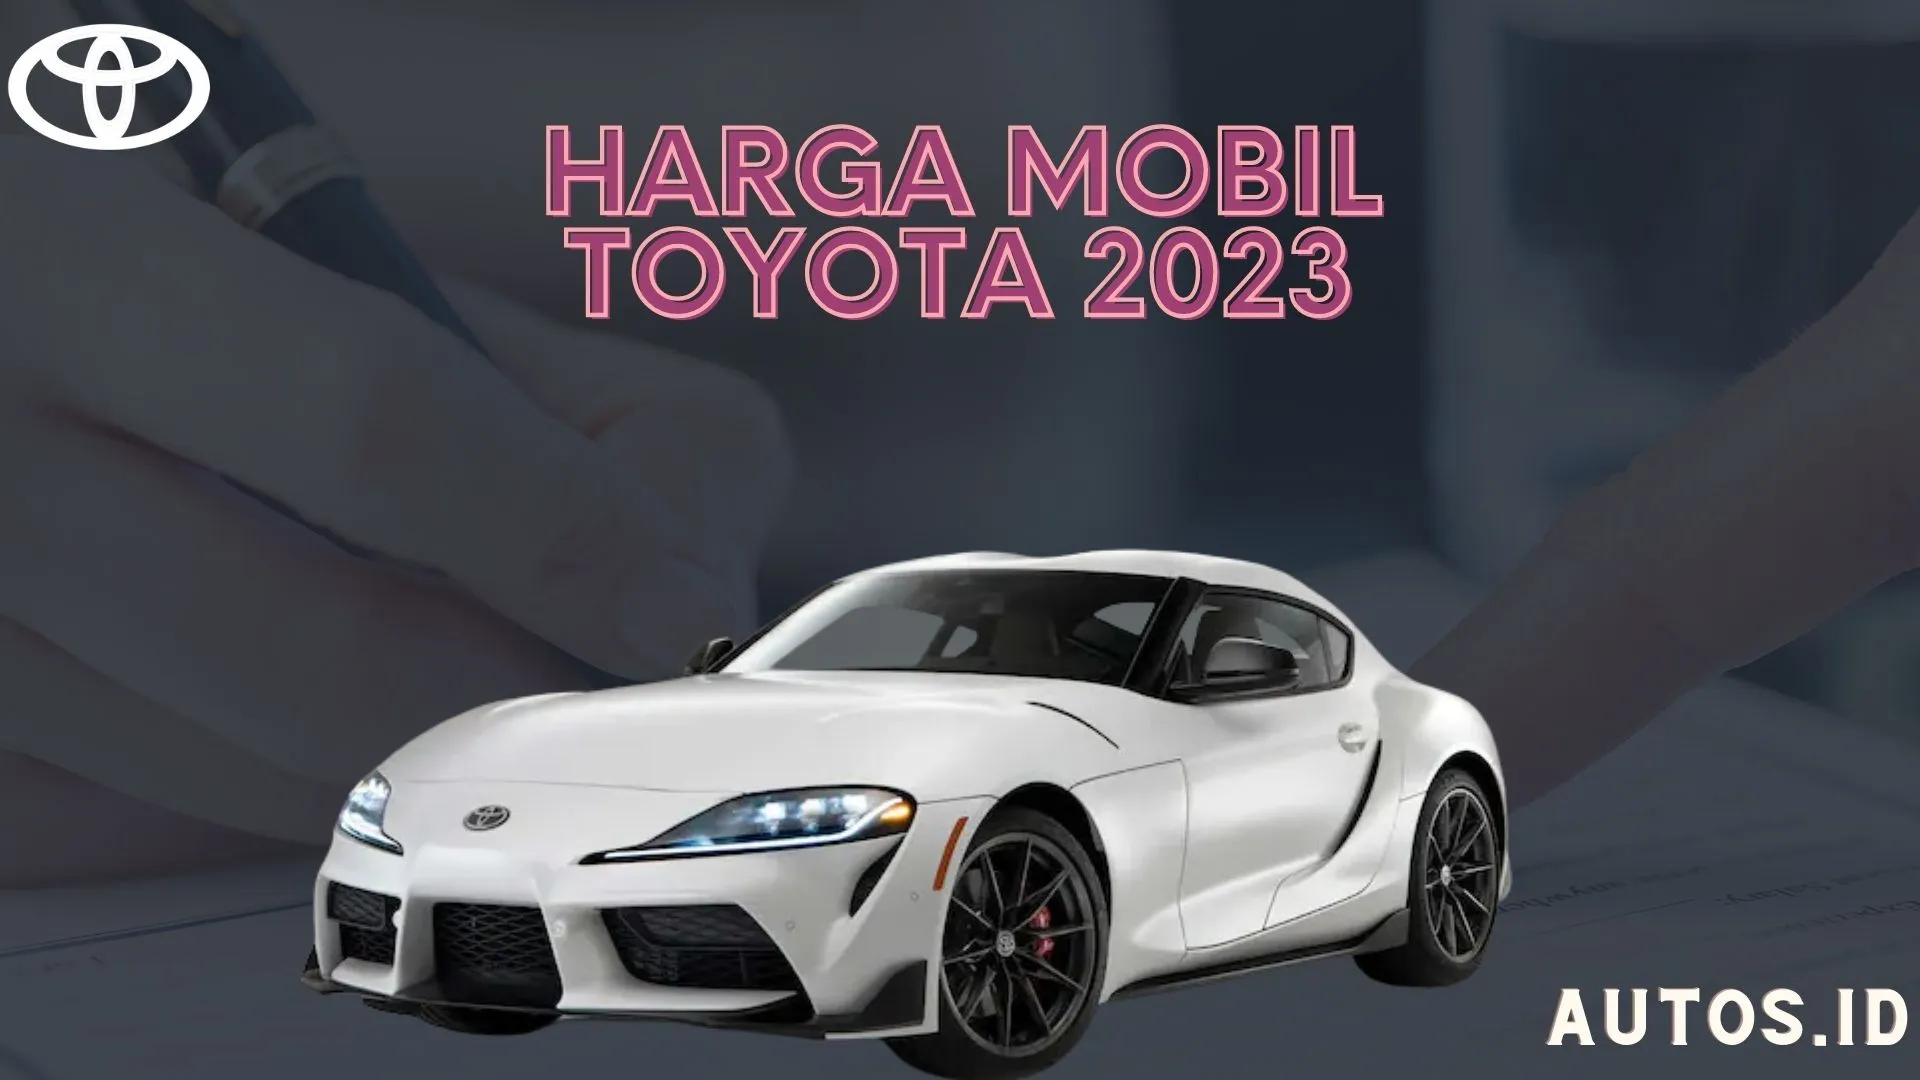 Harga Mobil Toyota Terbaru 2023